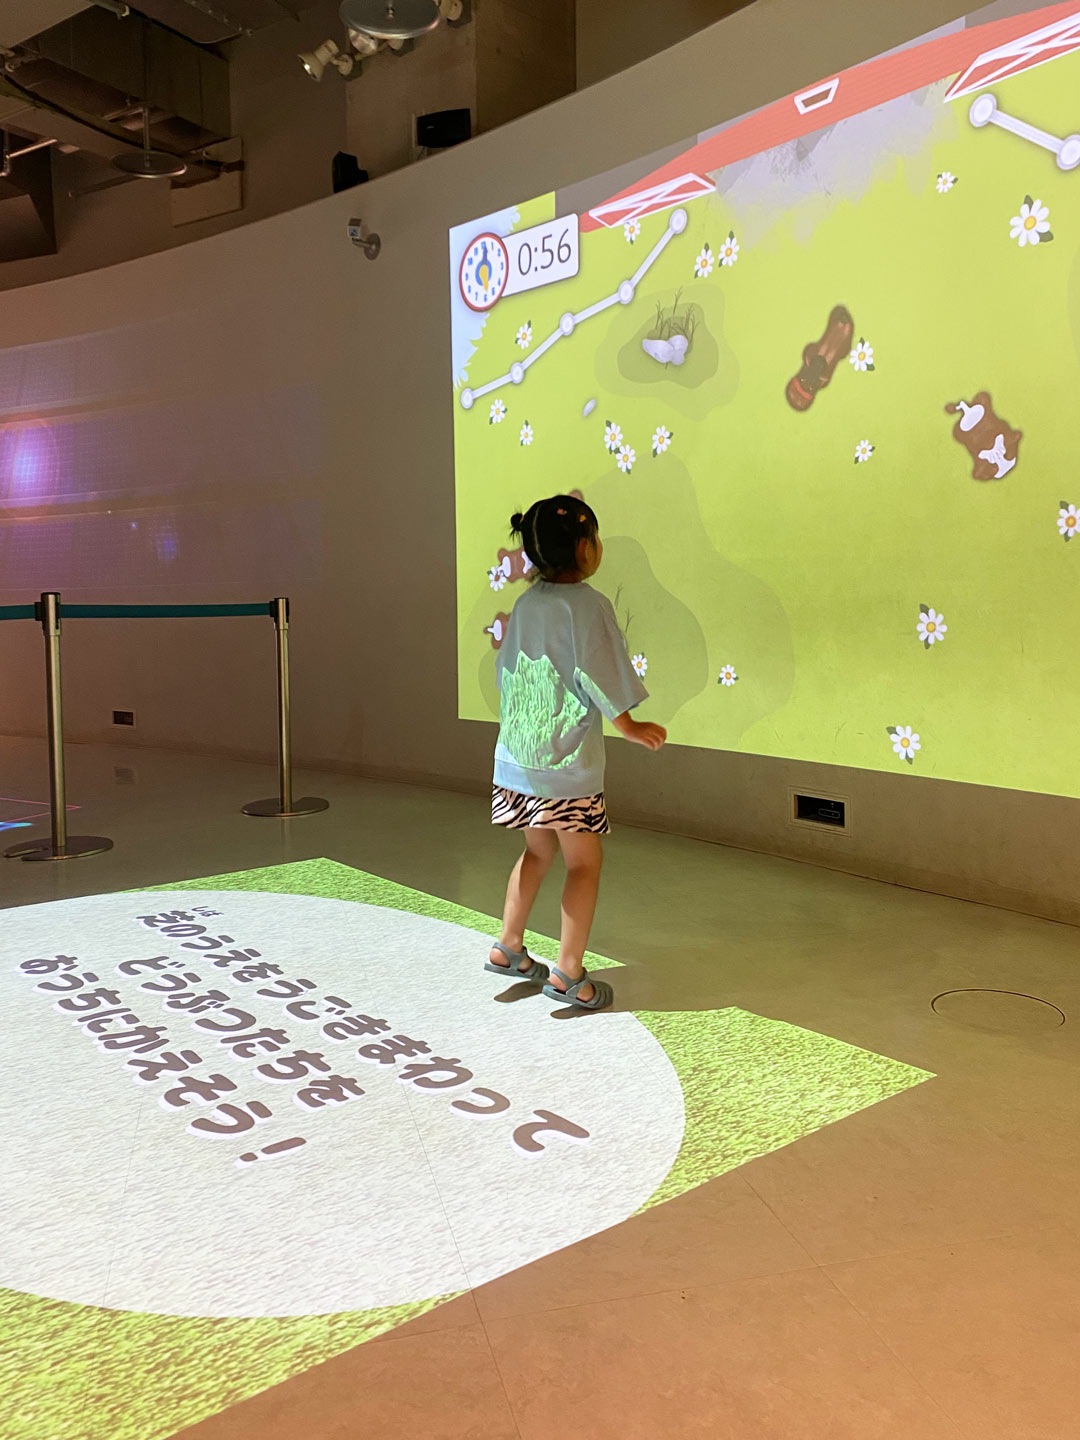 足立区 西新井 ギャラクシティ こども未来創造館 デジタルきゃんばす デジタルゲーム 映像